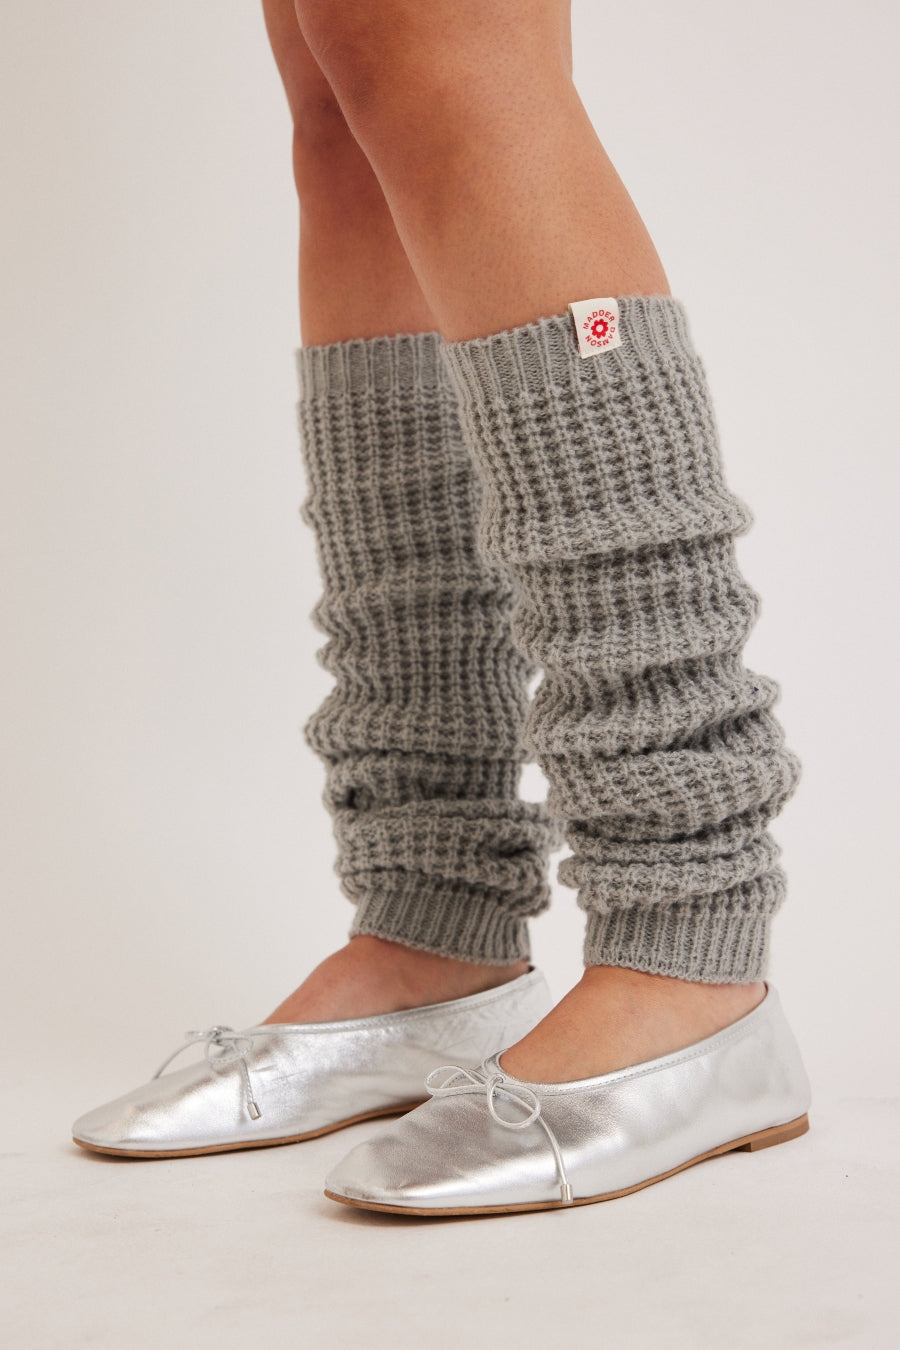 ダムソンマダー Damson Madder chunky knitted leg warmers in pale